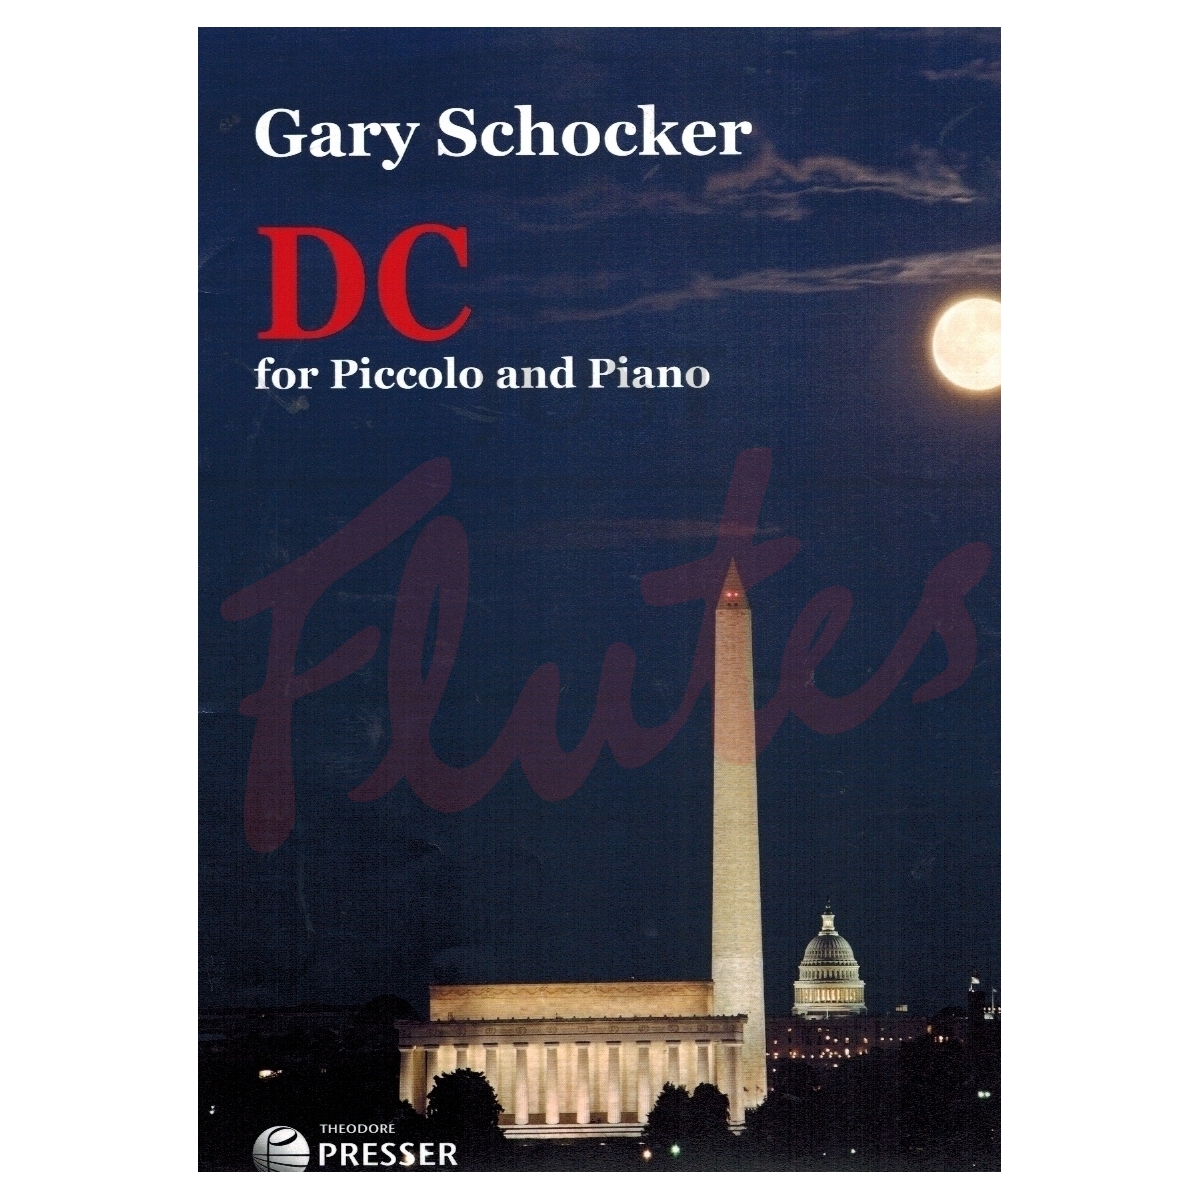 DC for Piccolo and Piano